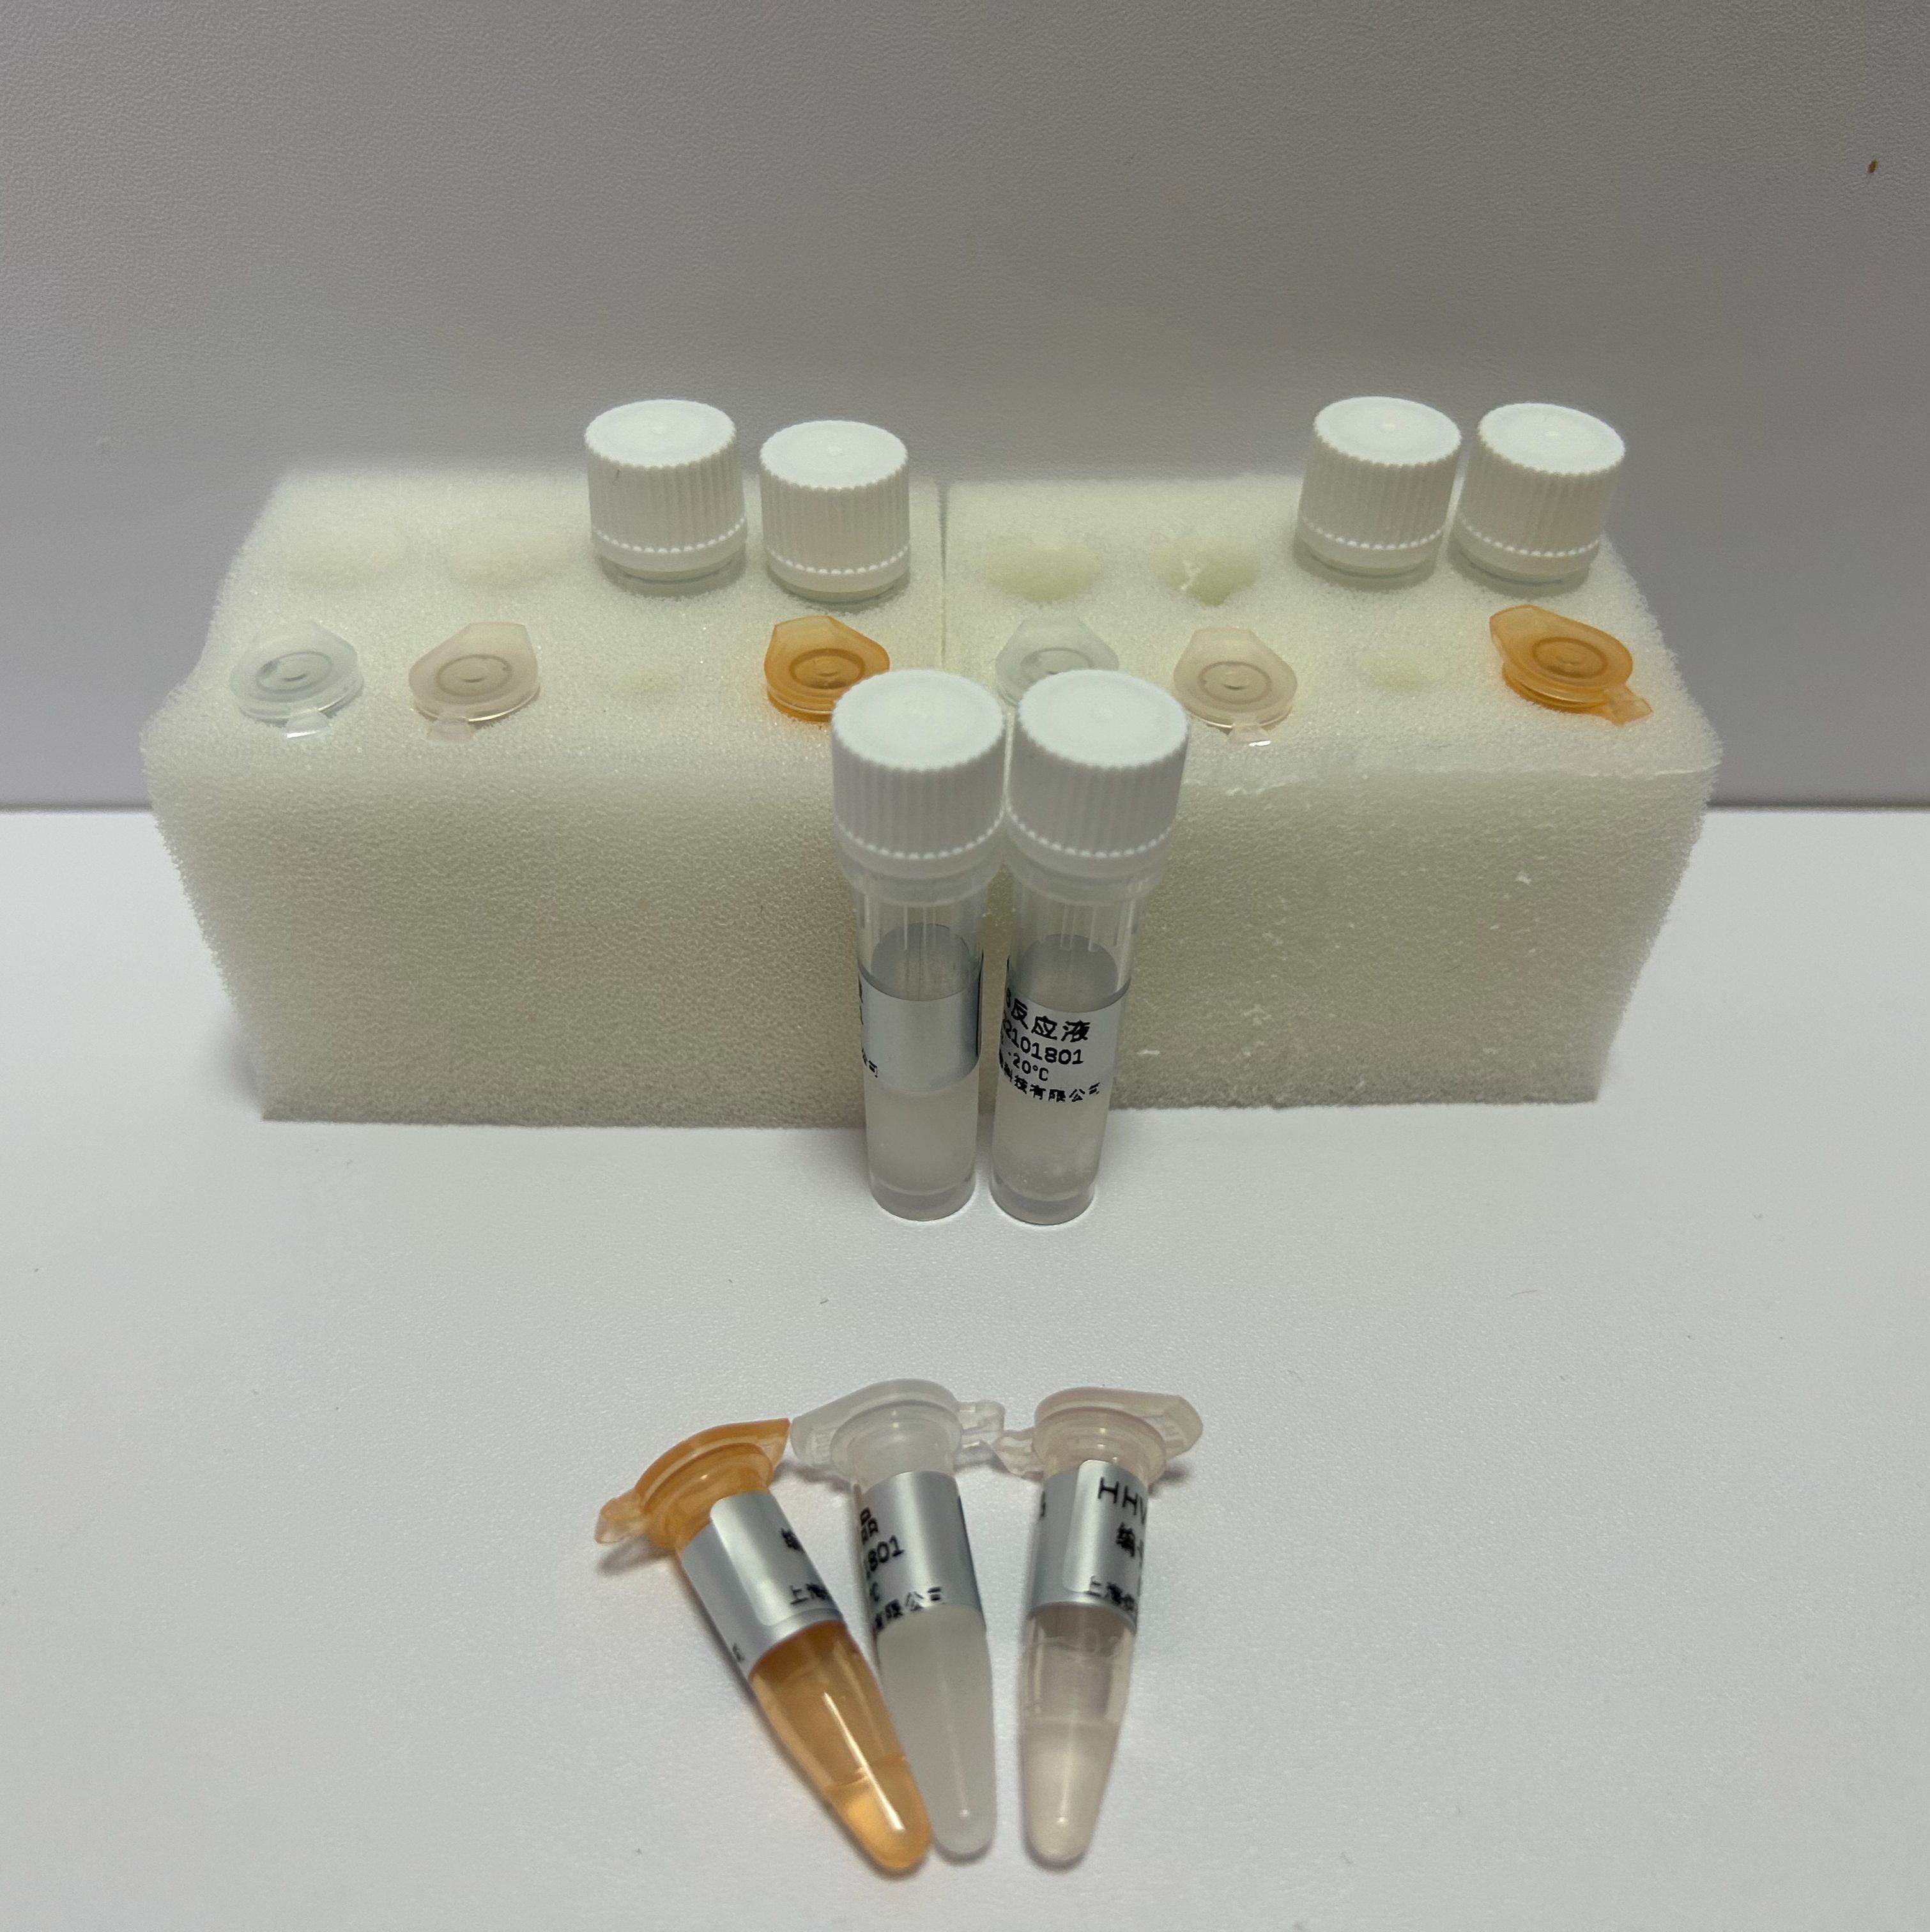 肉毒梭状芽孢杆菌F型外毒素基因染料法荧光定量PCR试剂盒